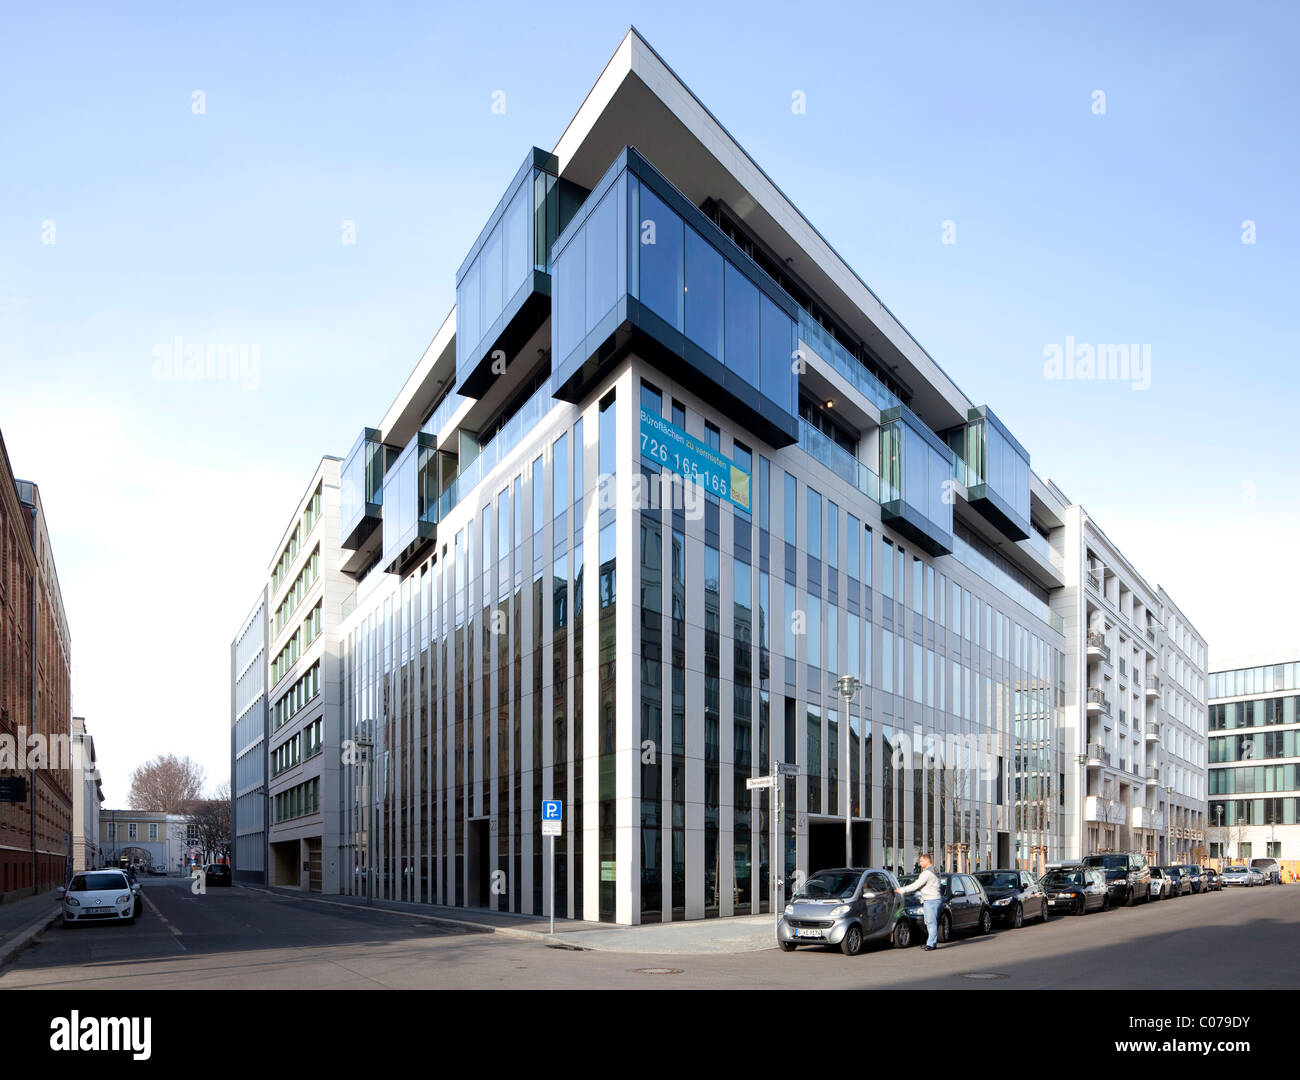 Immeuble de bureaux moderne sur la rue Jaegerstrasse, Mitte, Berlin, Germany, Europe Banque D'Images